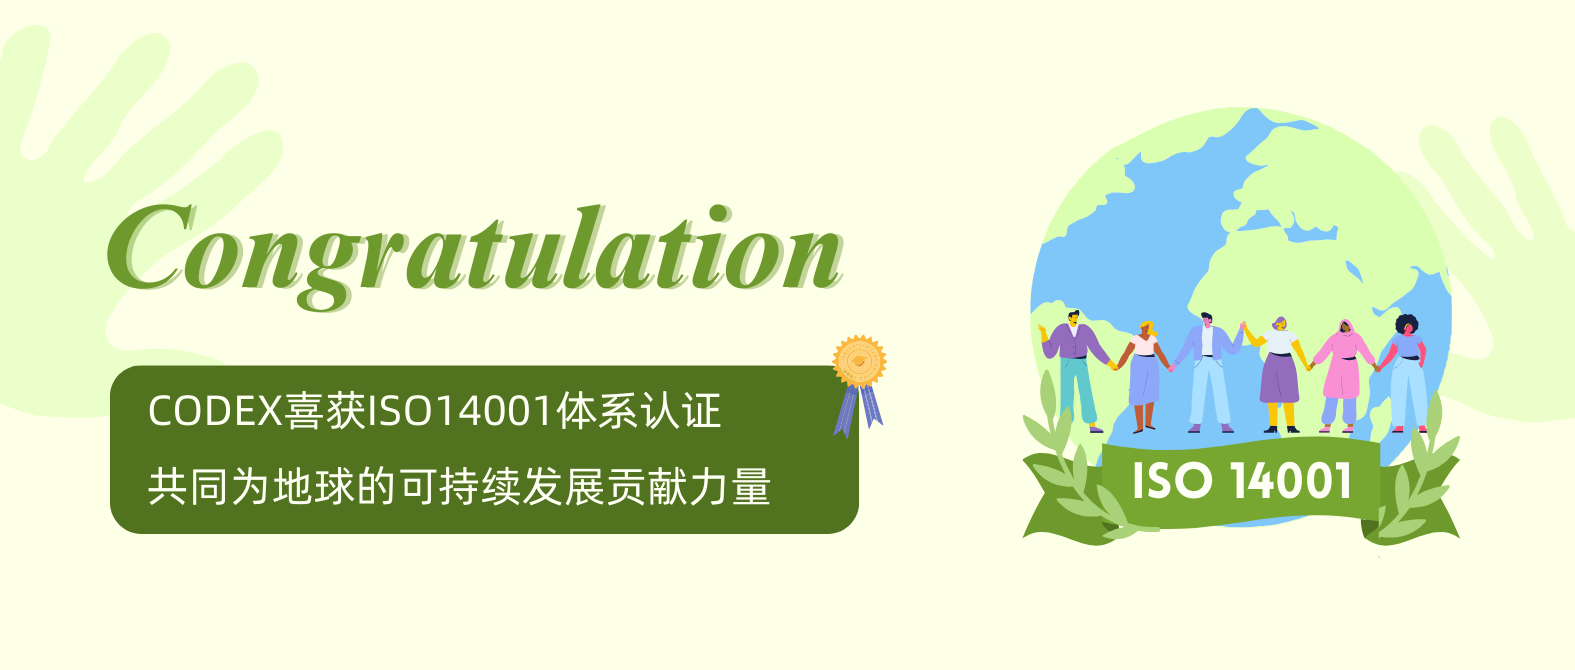 我们的承诺，为地球献上一份绿色答卷：ISO14001-2015体系认证花落CODEX ！